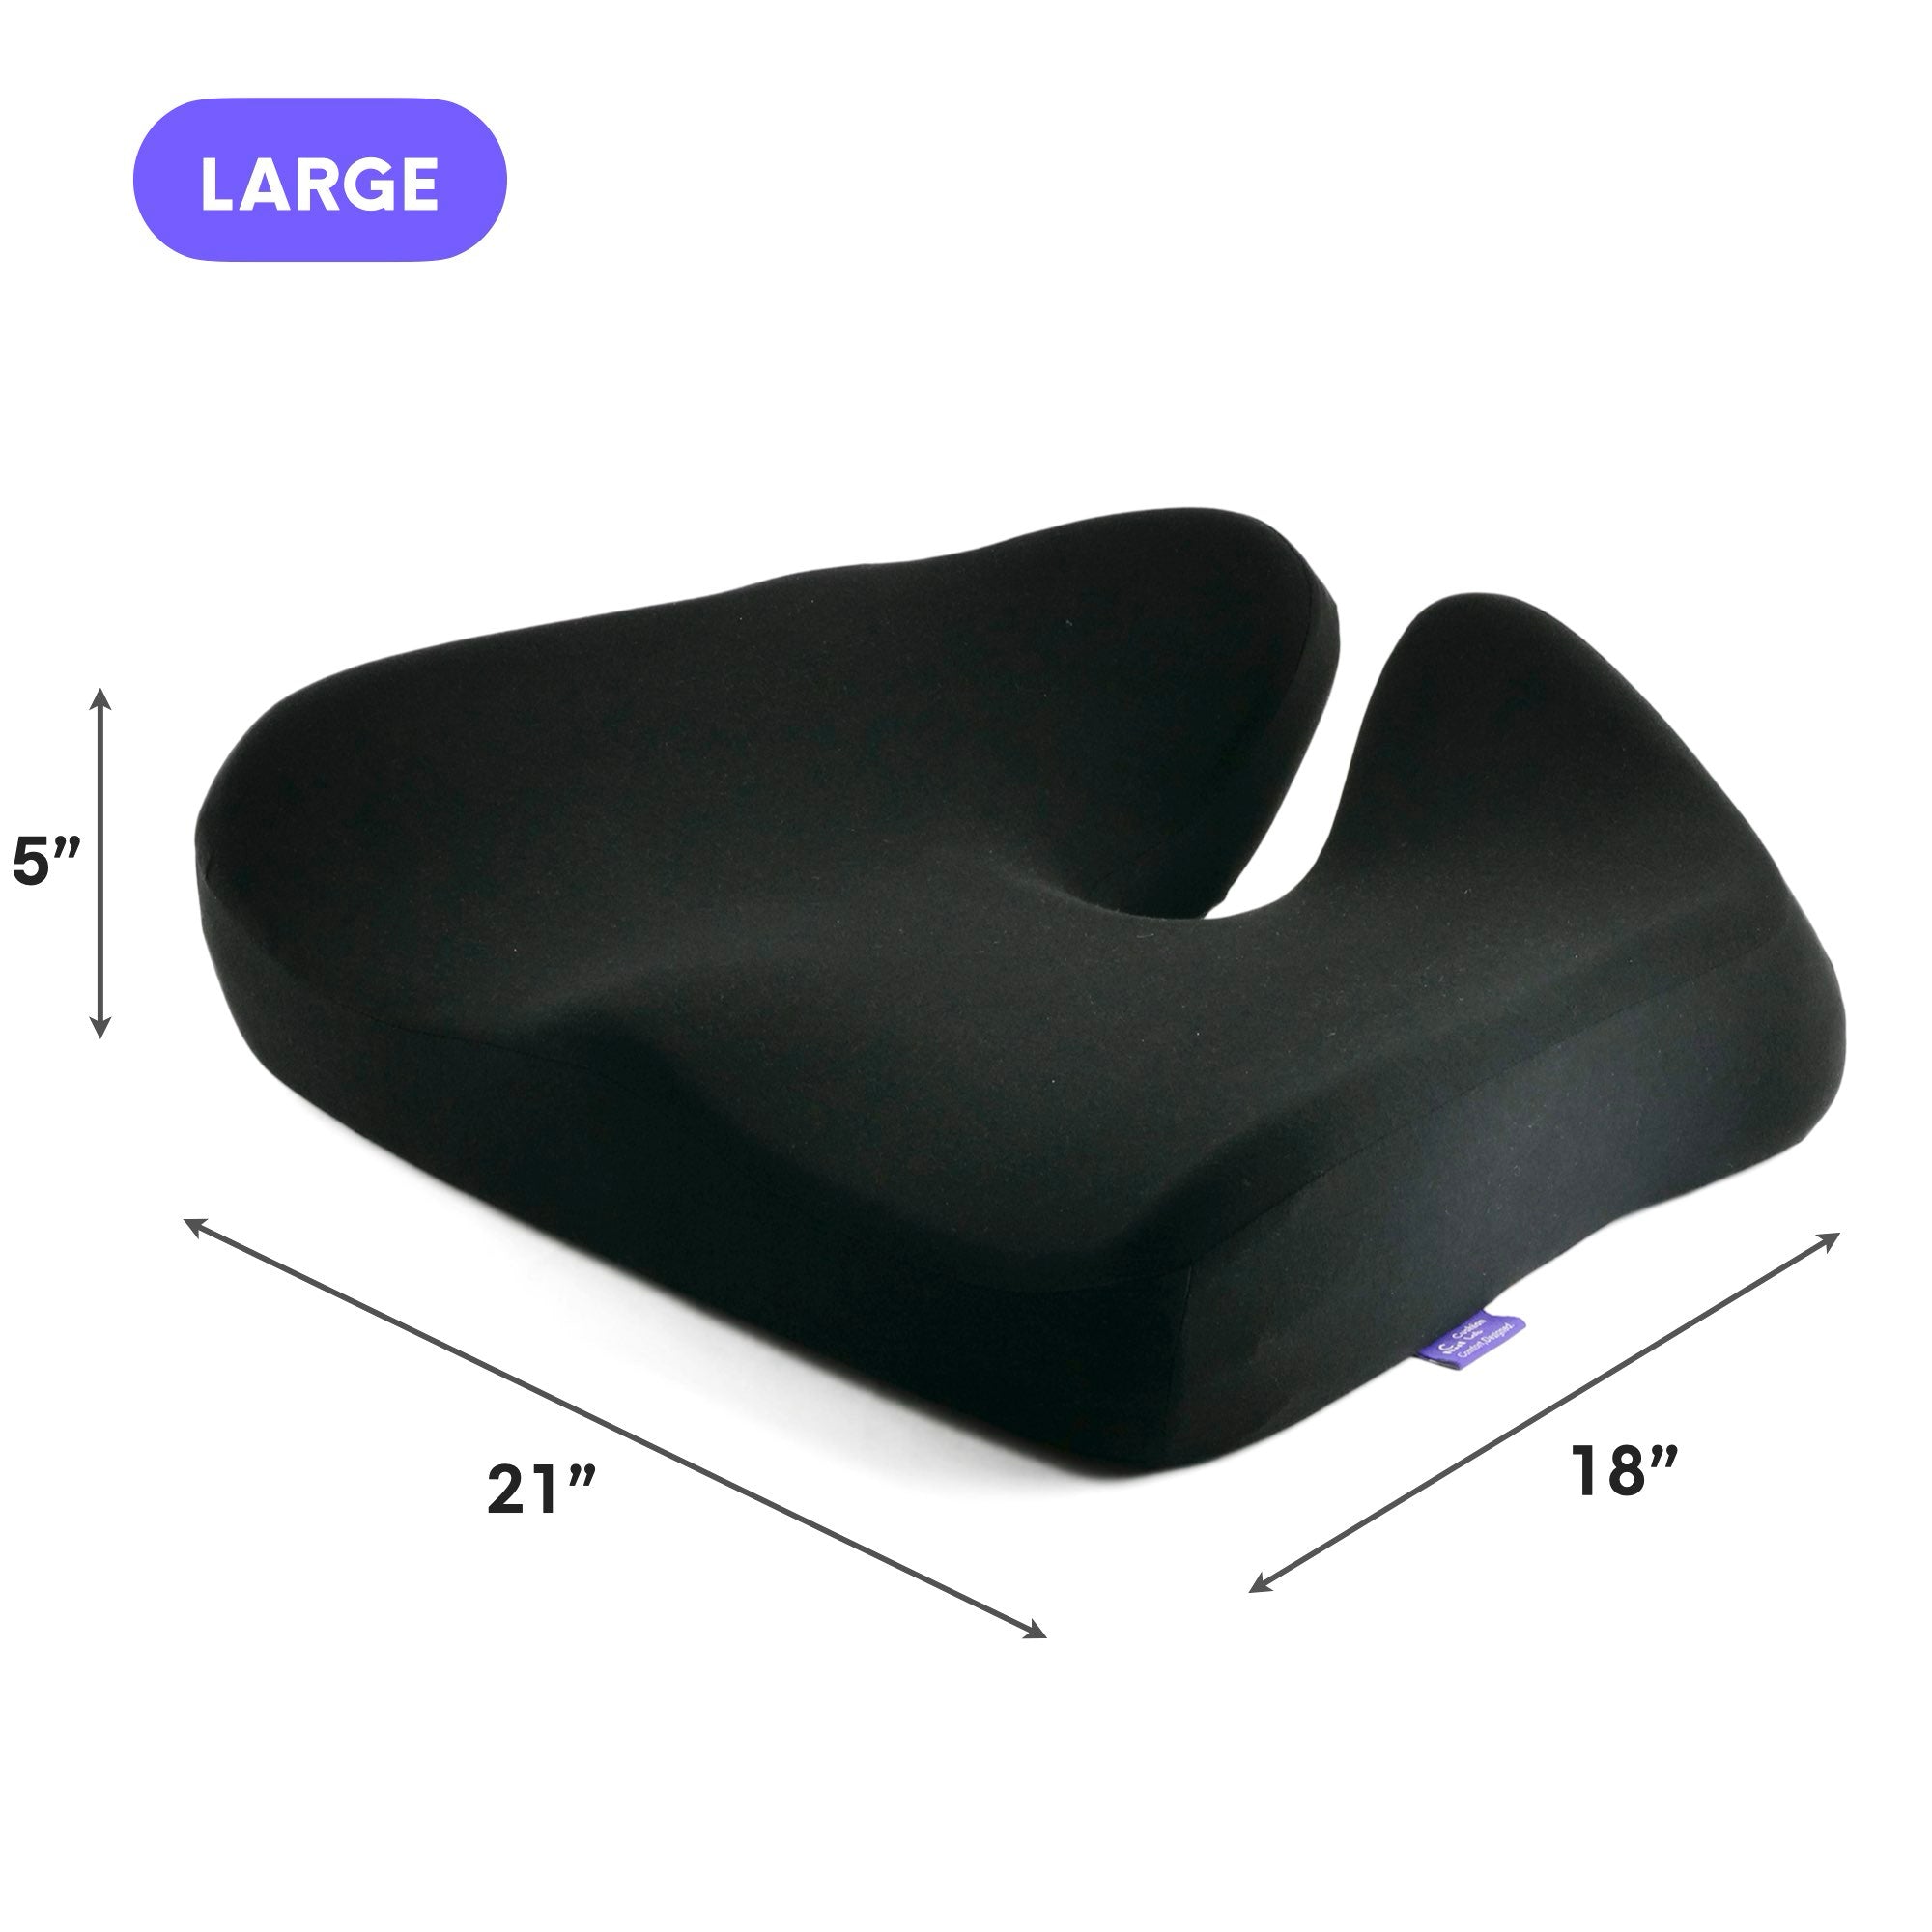 Cushion Lab Pressure Relief Seat Cushion - Black